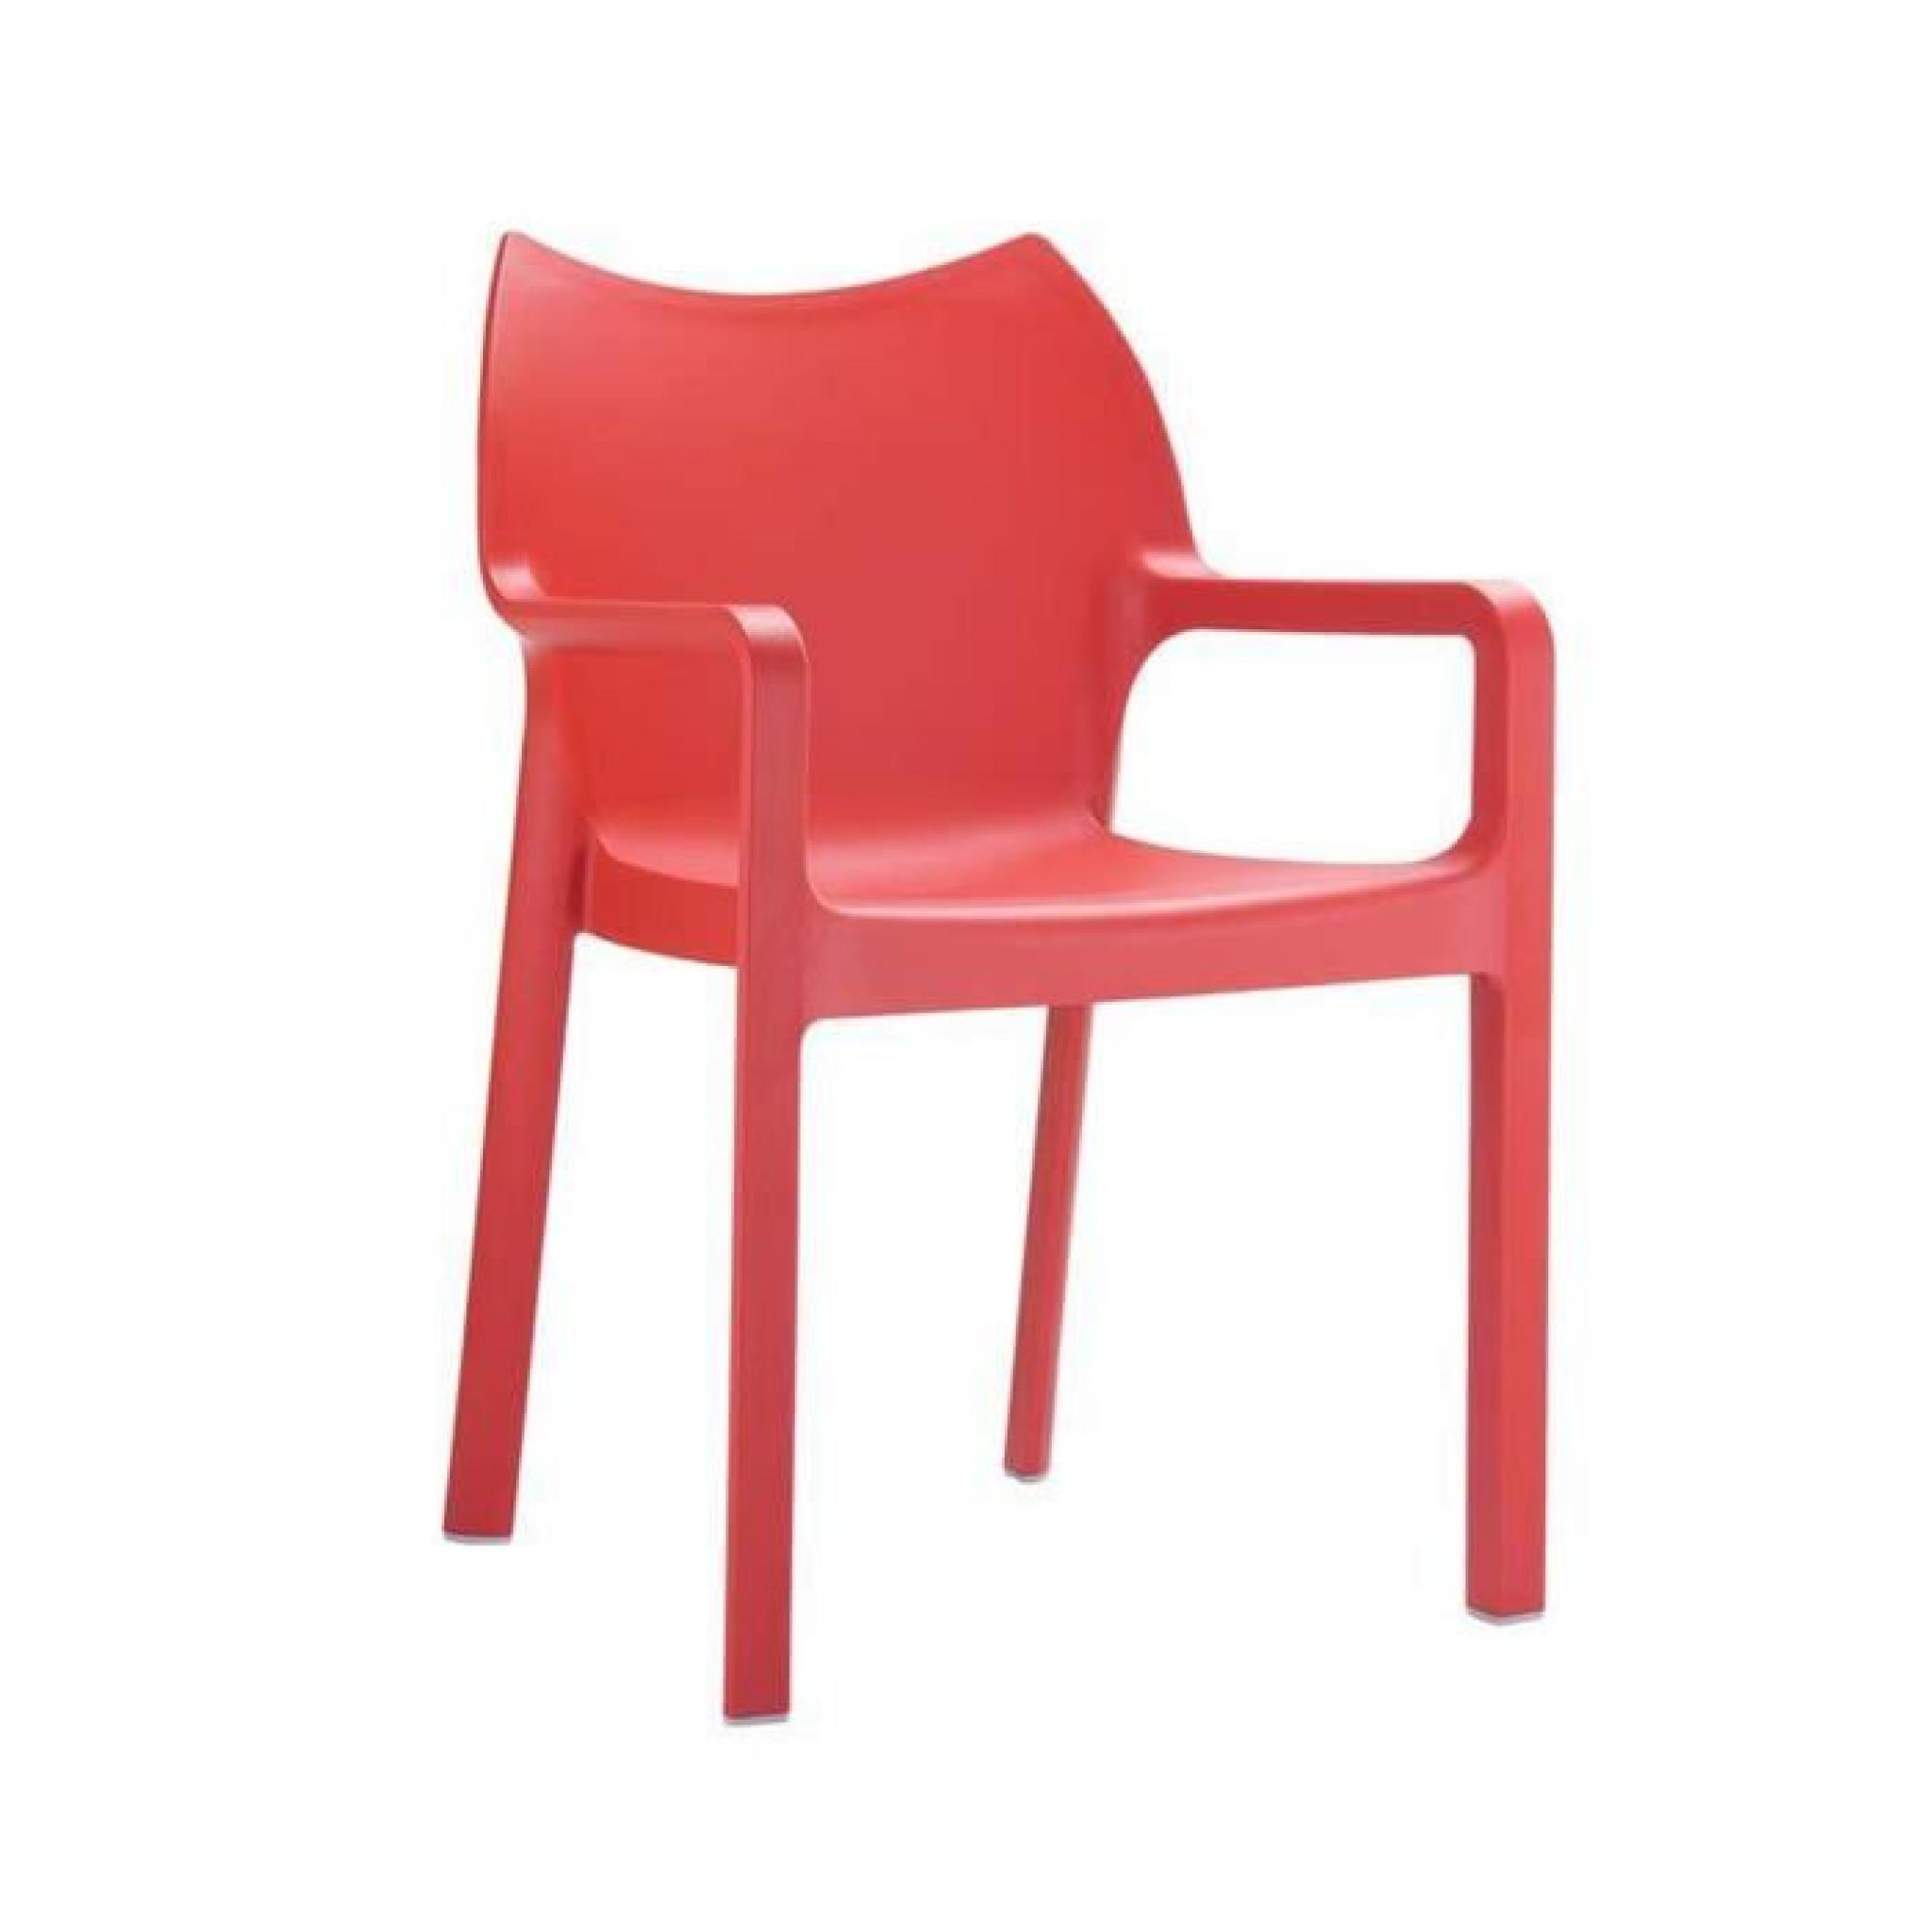 Chaise de jardin empilable en plastique rouge - H84 x P53 x L57 cm